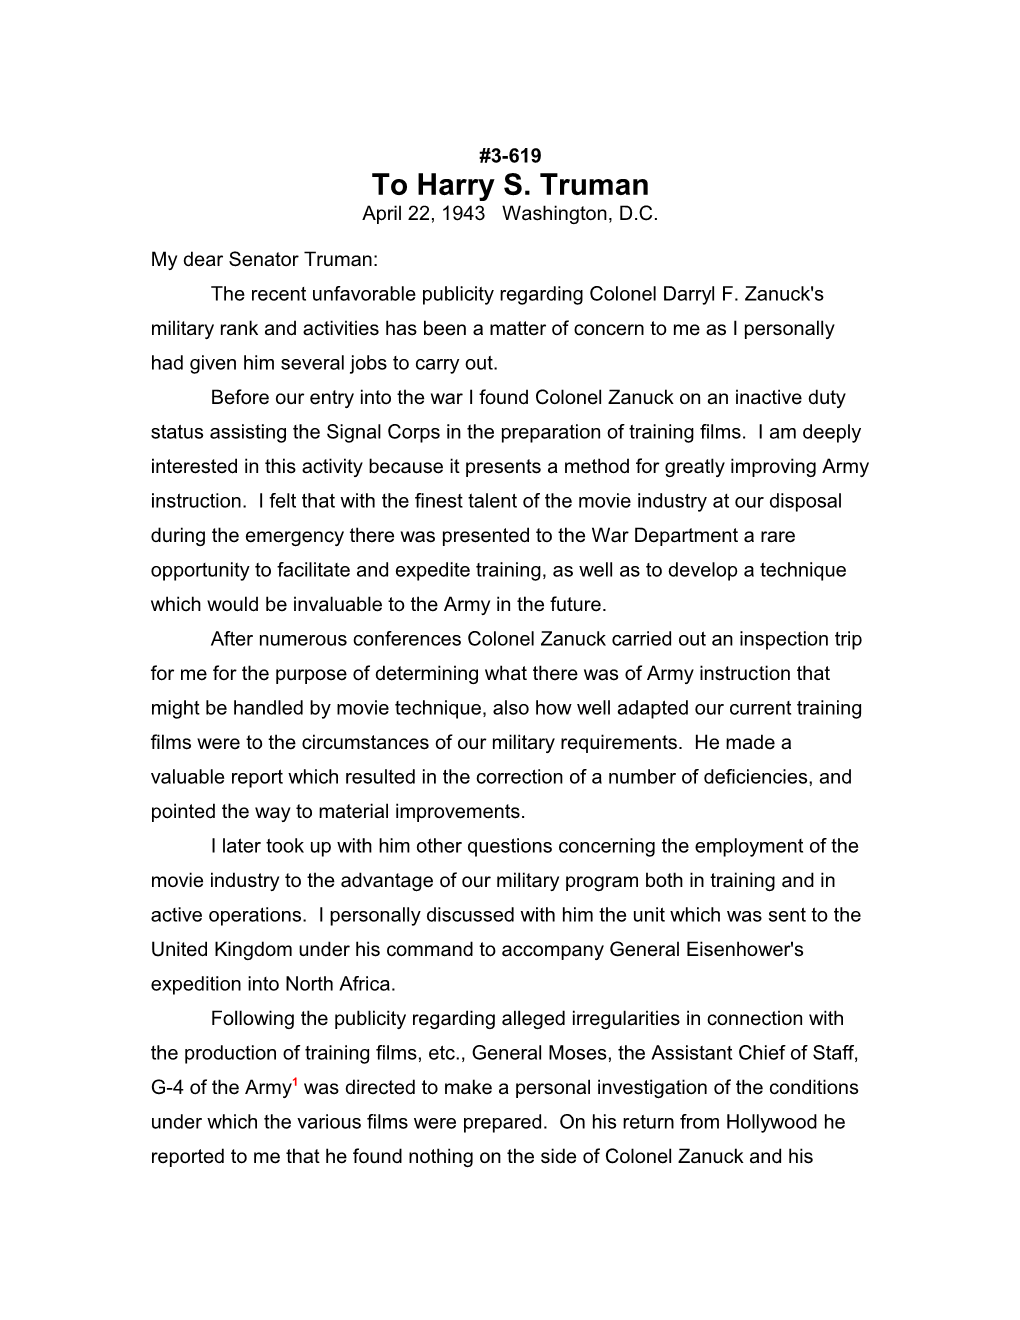 To Harry S. Truman